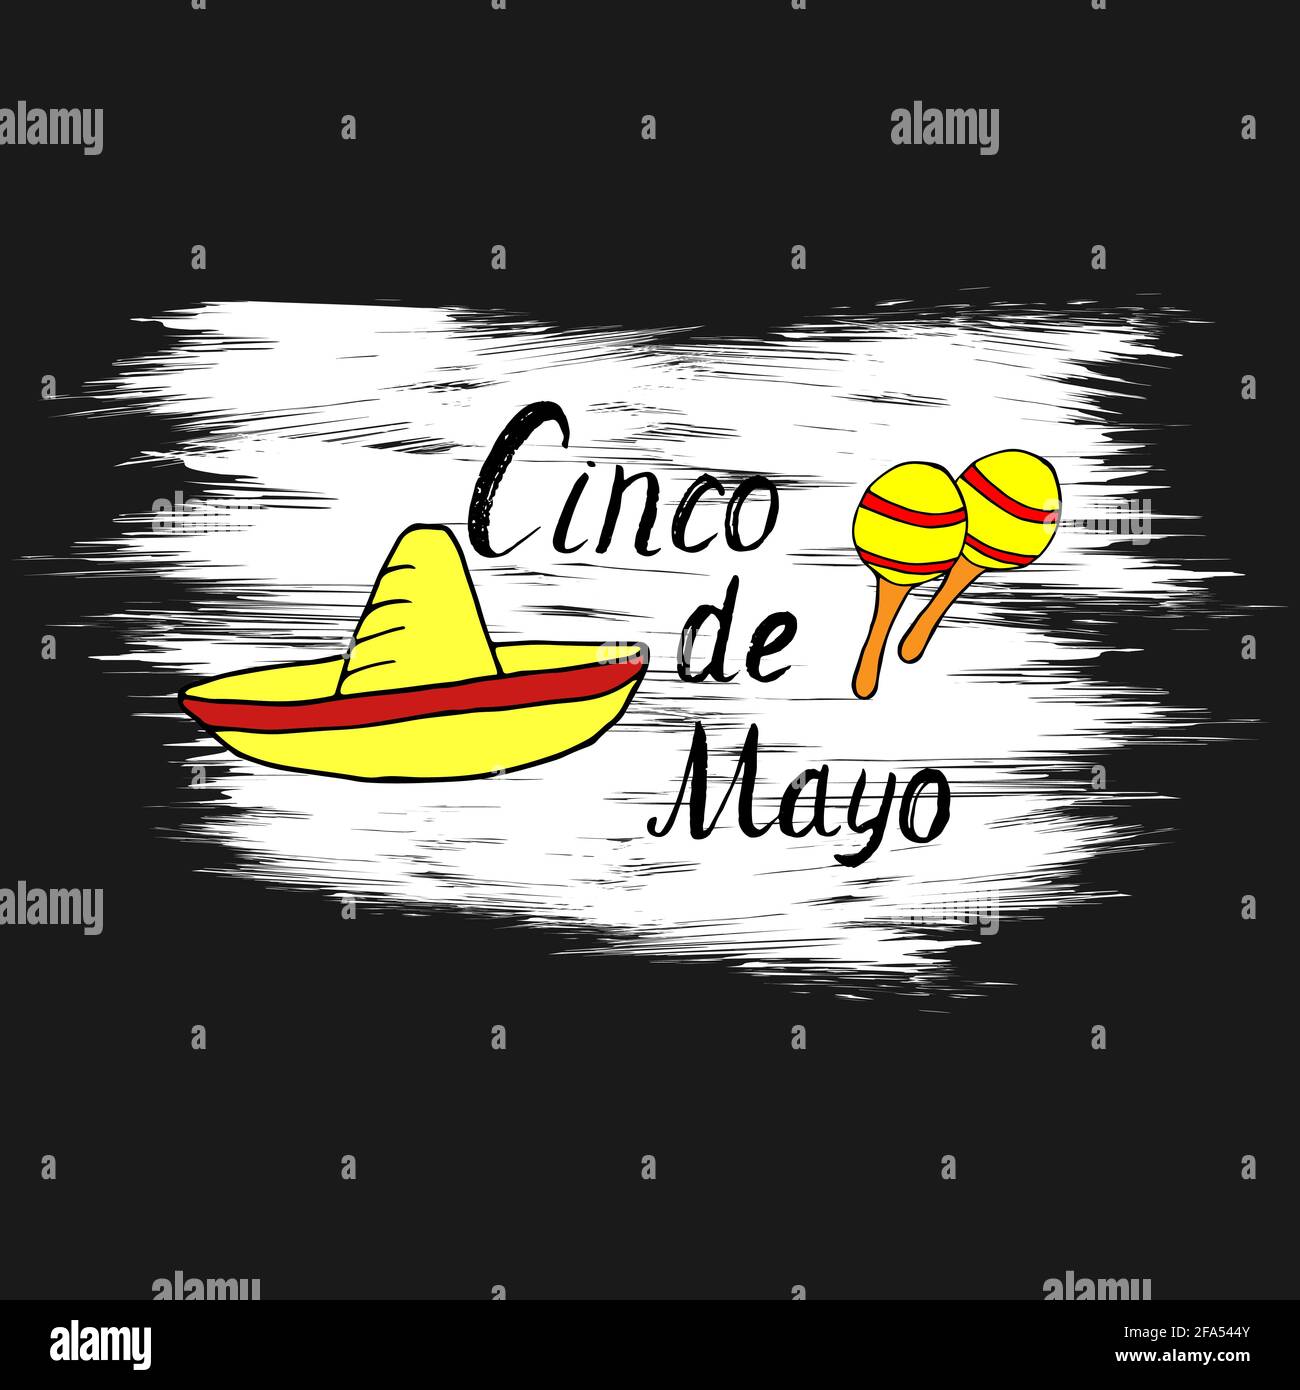 Cinco de mayo scritta a mano per scrivere frase design, disegni a mano doodles cartoon colorful sombrero e maracas su sfondo bianco grunge. Vettore Illustrazione Vettoriale